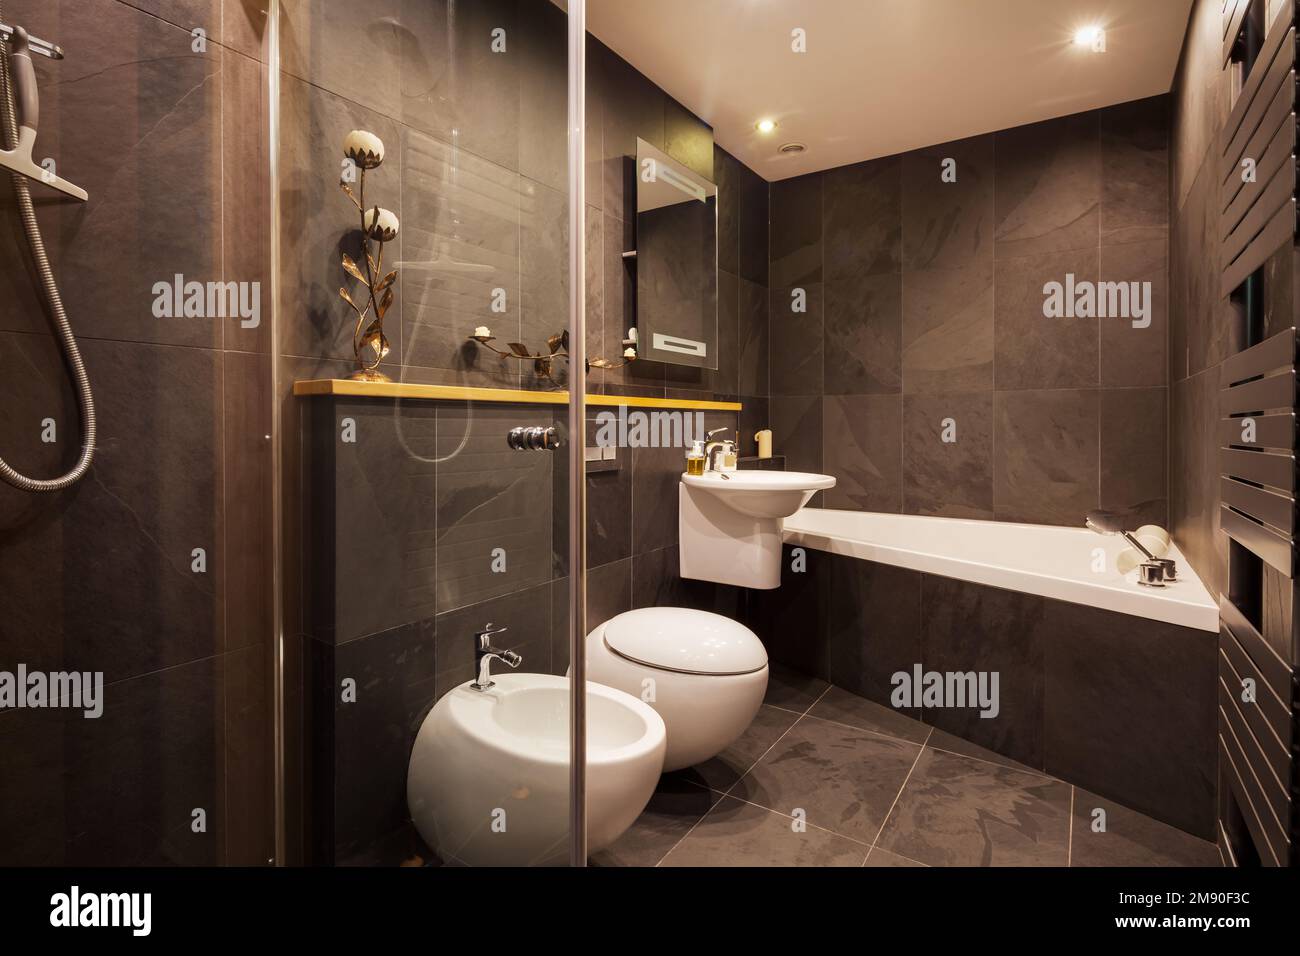 Modernes gefliestes Badezimmer mit dunklen gefliesten Wänden, beheiztem Handtuchhalter und modernen Armaturen Stockfoto